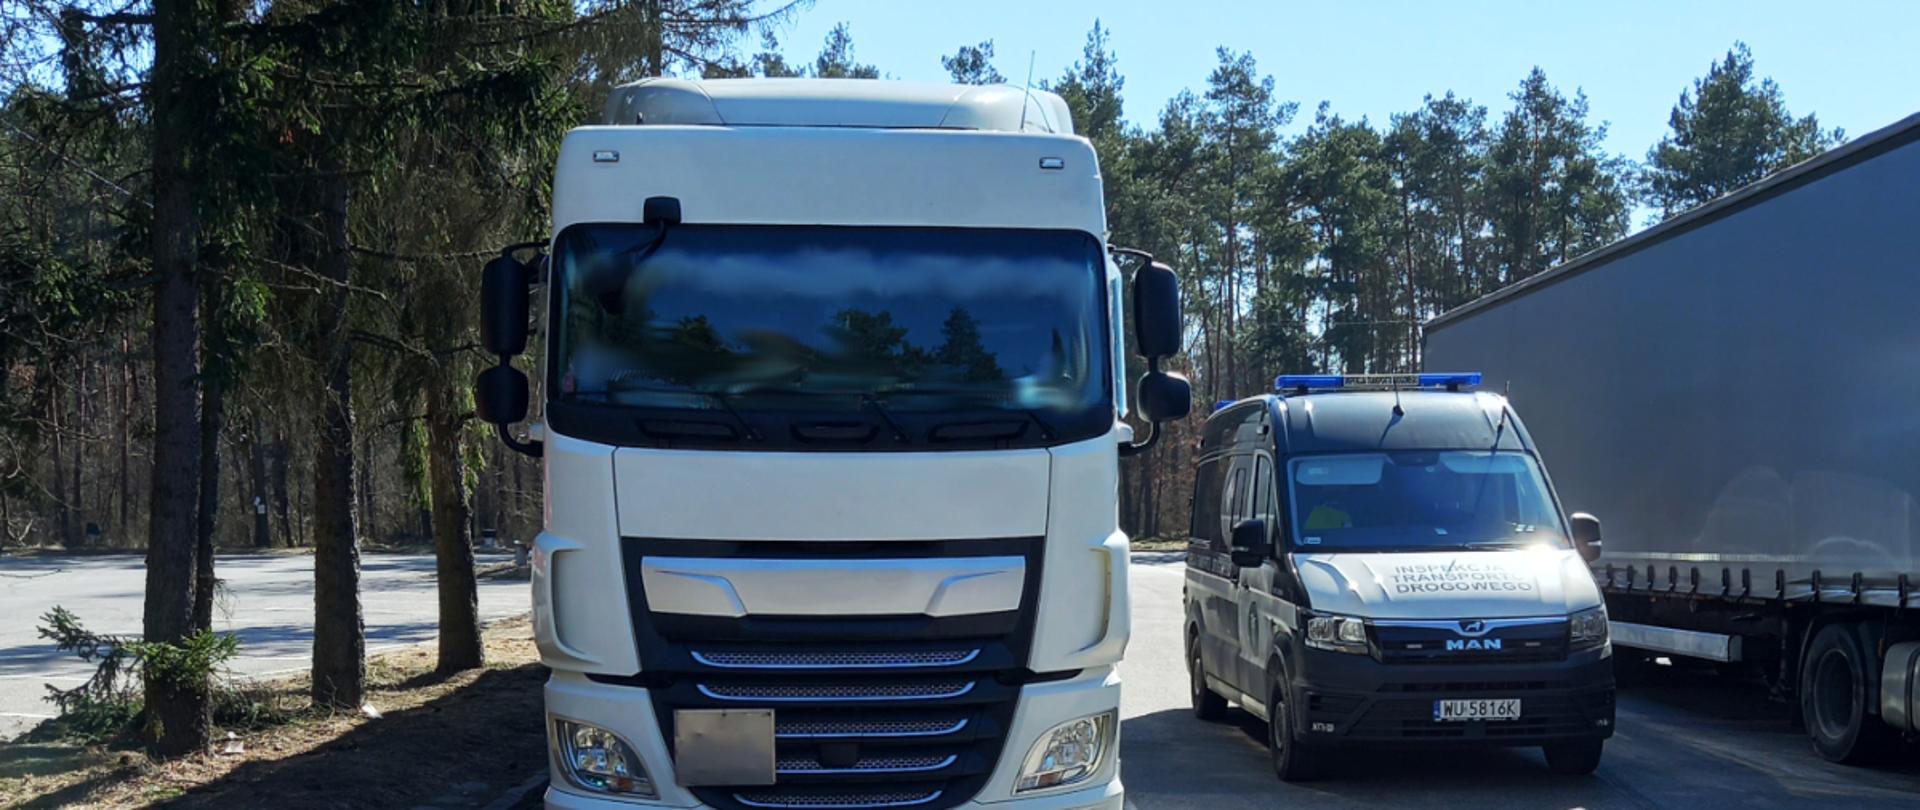 Ciężarówka zatrzymana do kontroli przez jędrzejowskich inspektorów ITD. Po lewej skontrolowany pojazd ciężarowy, po prawej furgon ITD i inna ciężarówka.